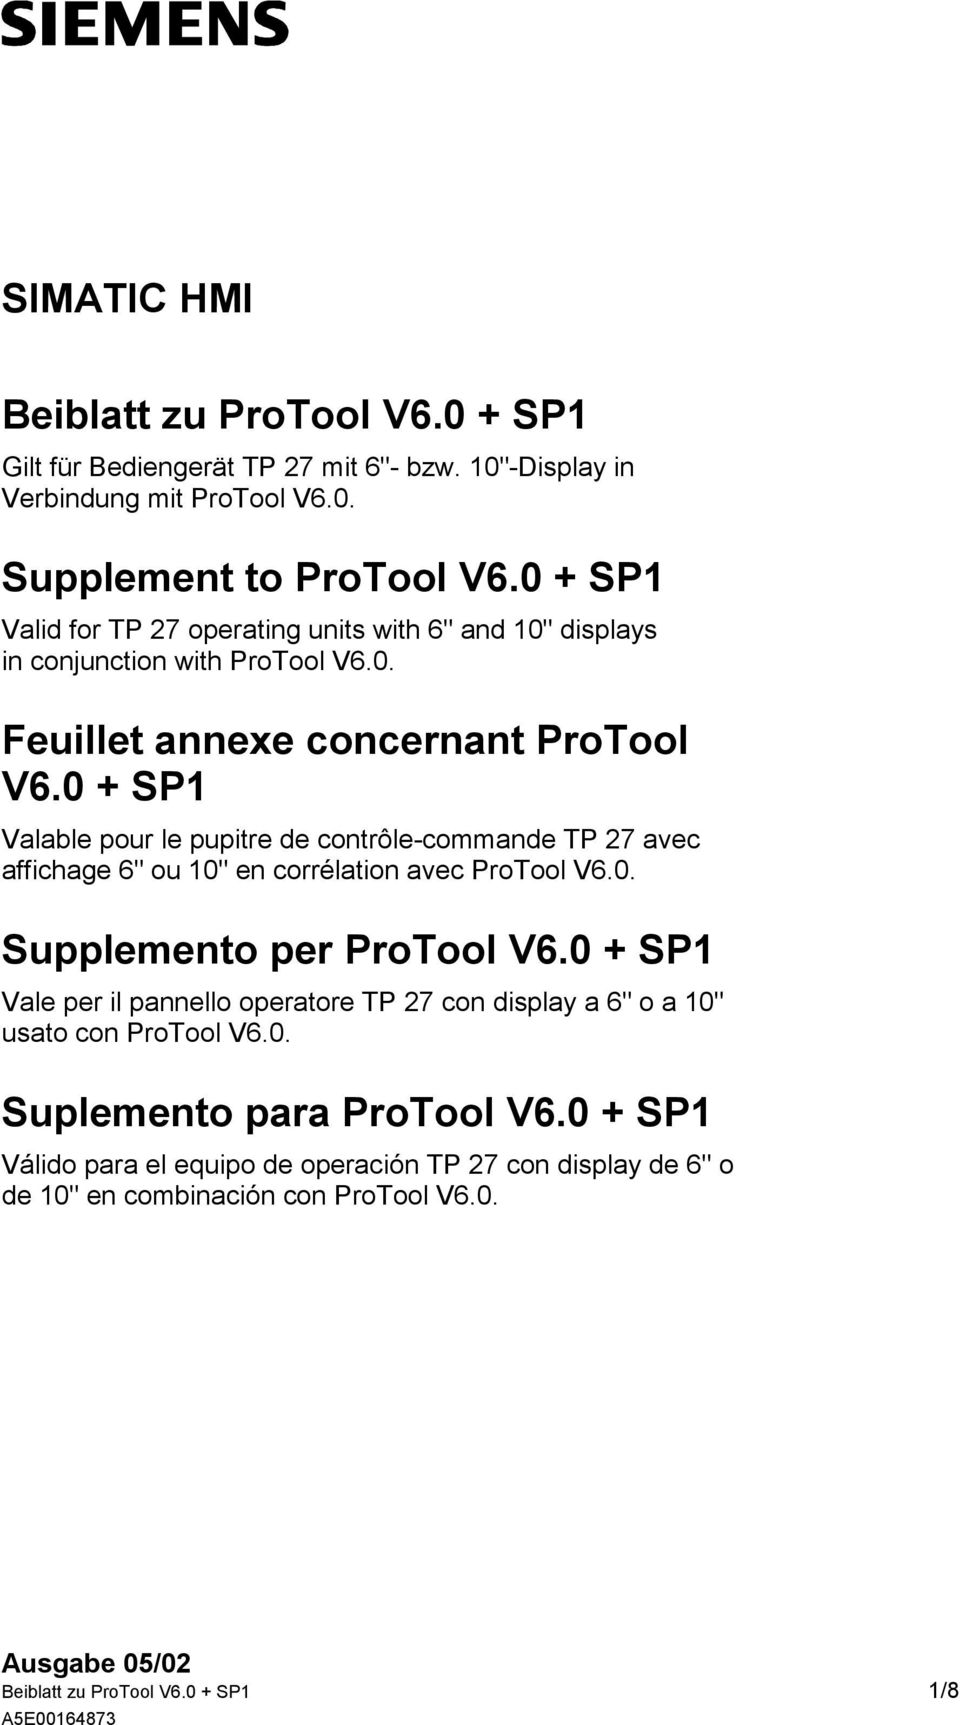 0 + SP1 Valable pour le pupitre de contrôle-commande TP 27 avec affichage 6" ou 10" en corrélation avec ProTool V6.0. Supplemento per ProTool V6.